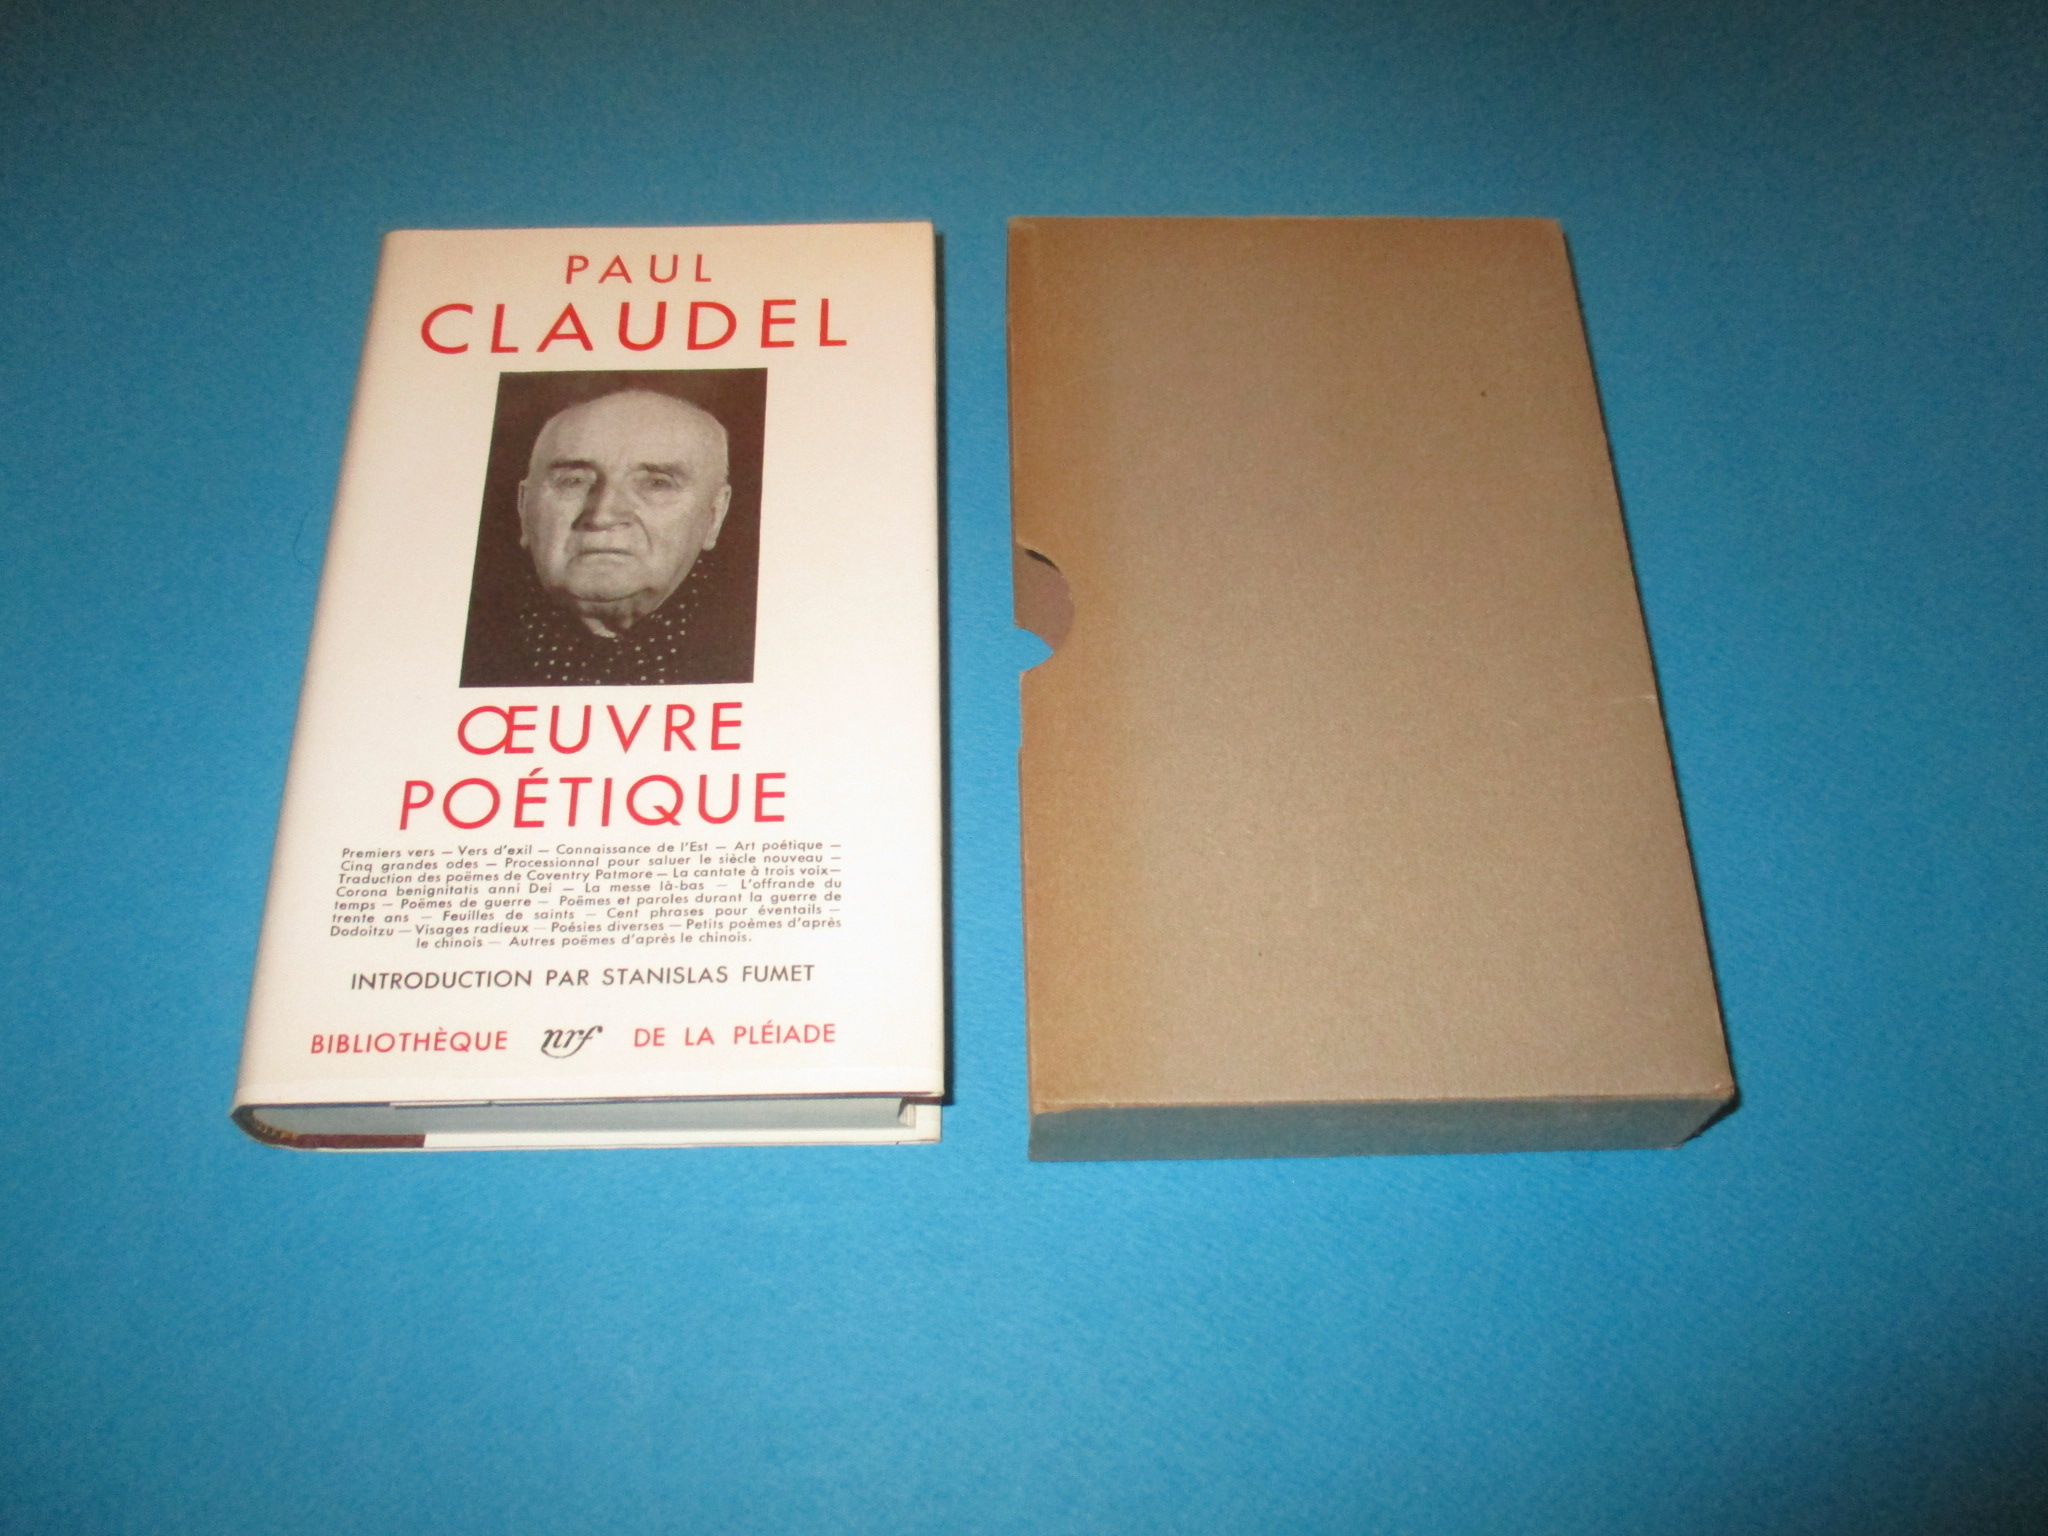 Oeuvre poétique, Paul Claudel, La Pléiade 1957